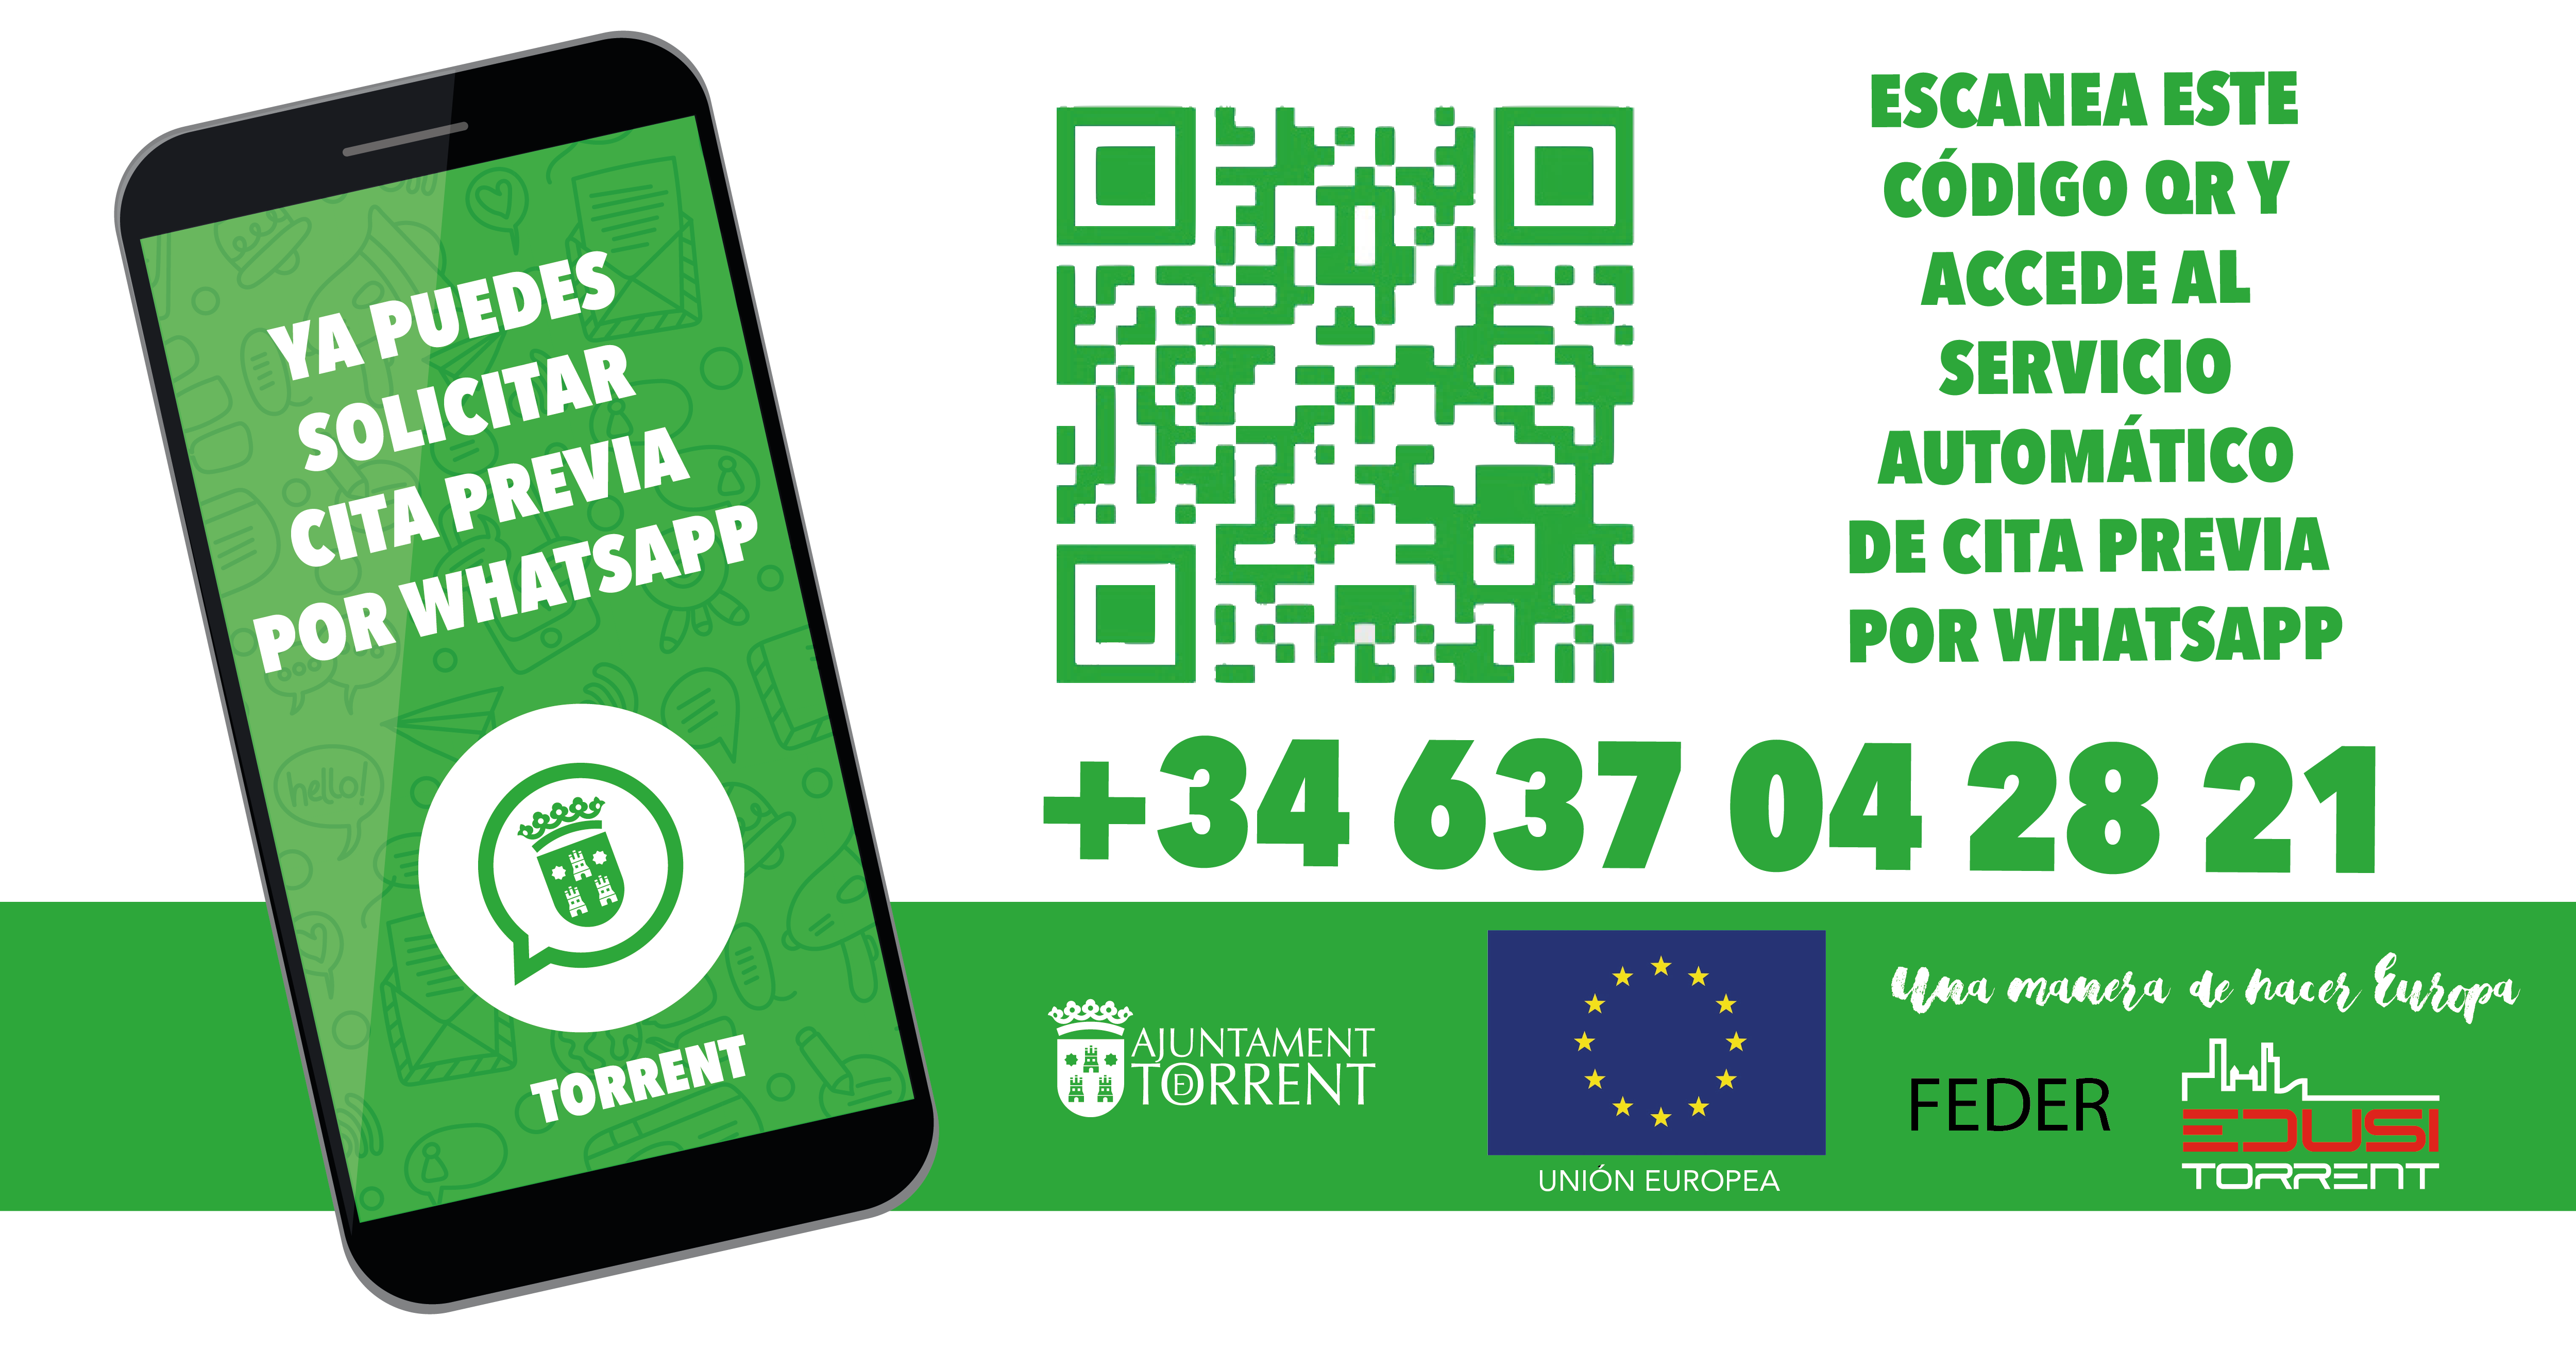 637 042 821, el número de telèfon del nou servei de cita prèvia per WhatsApp de l’Ajuntament de Torrent